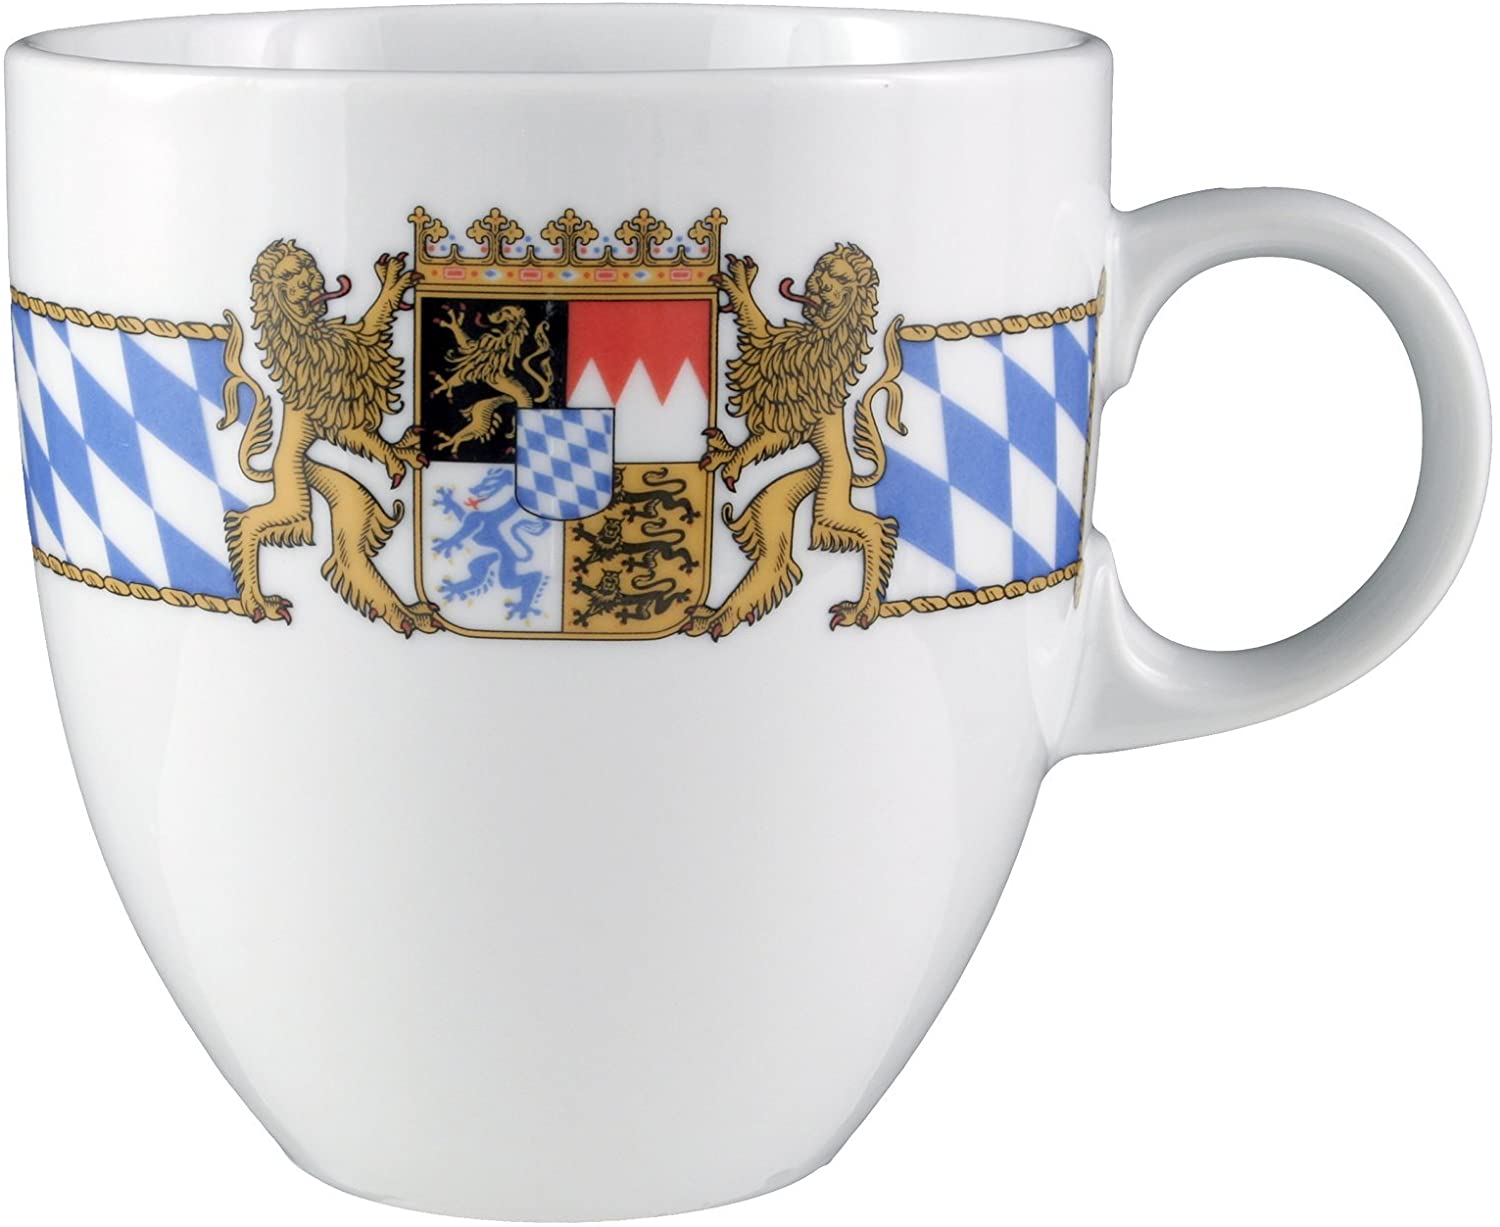 Seltmann Weiden 001.479426 Compact Bavaria Mug 0.50 L Porcelain